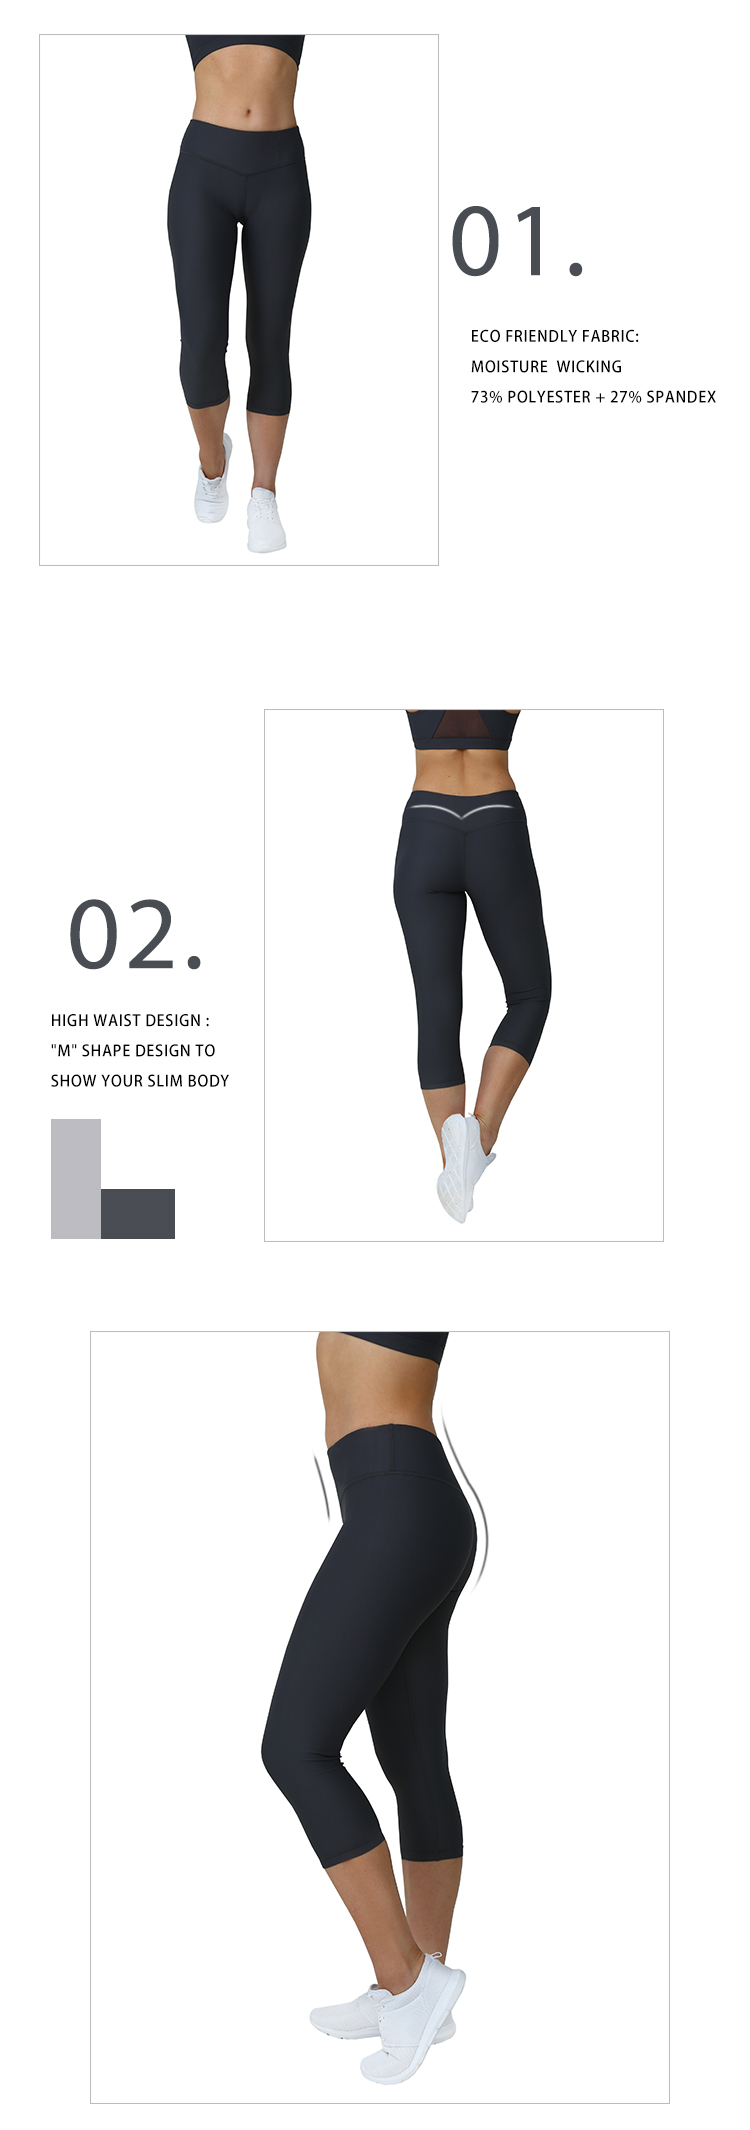 INGOR fashion yoga activewear set for manufacturer for gym-7